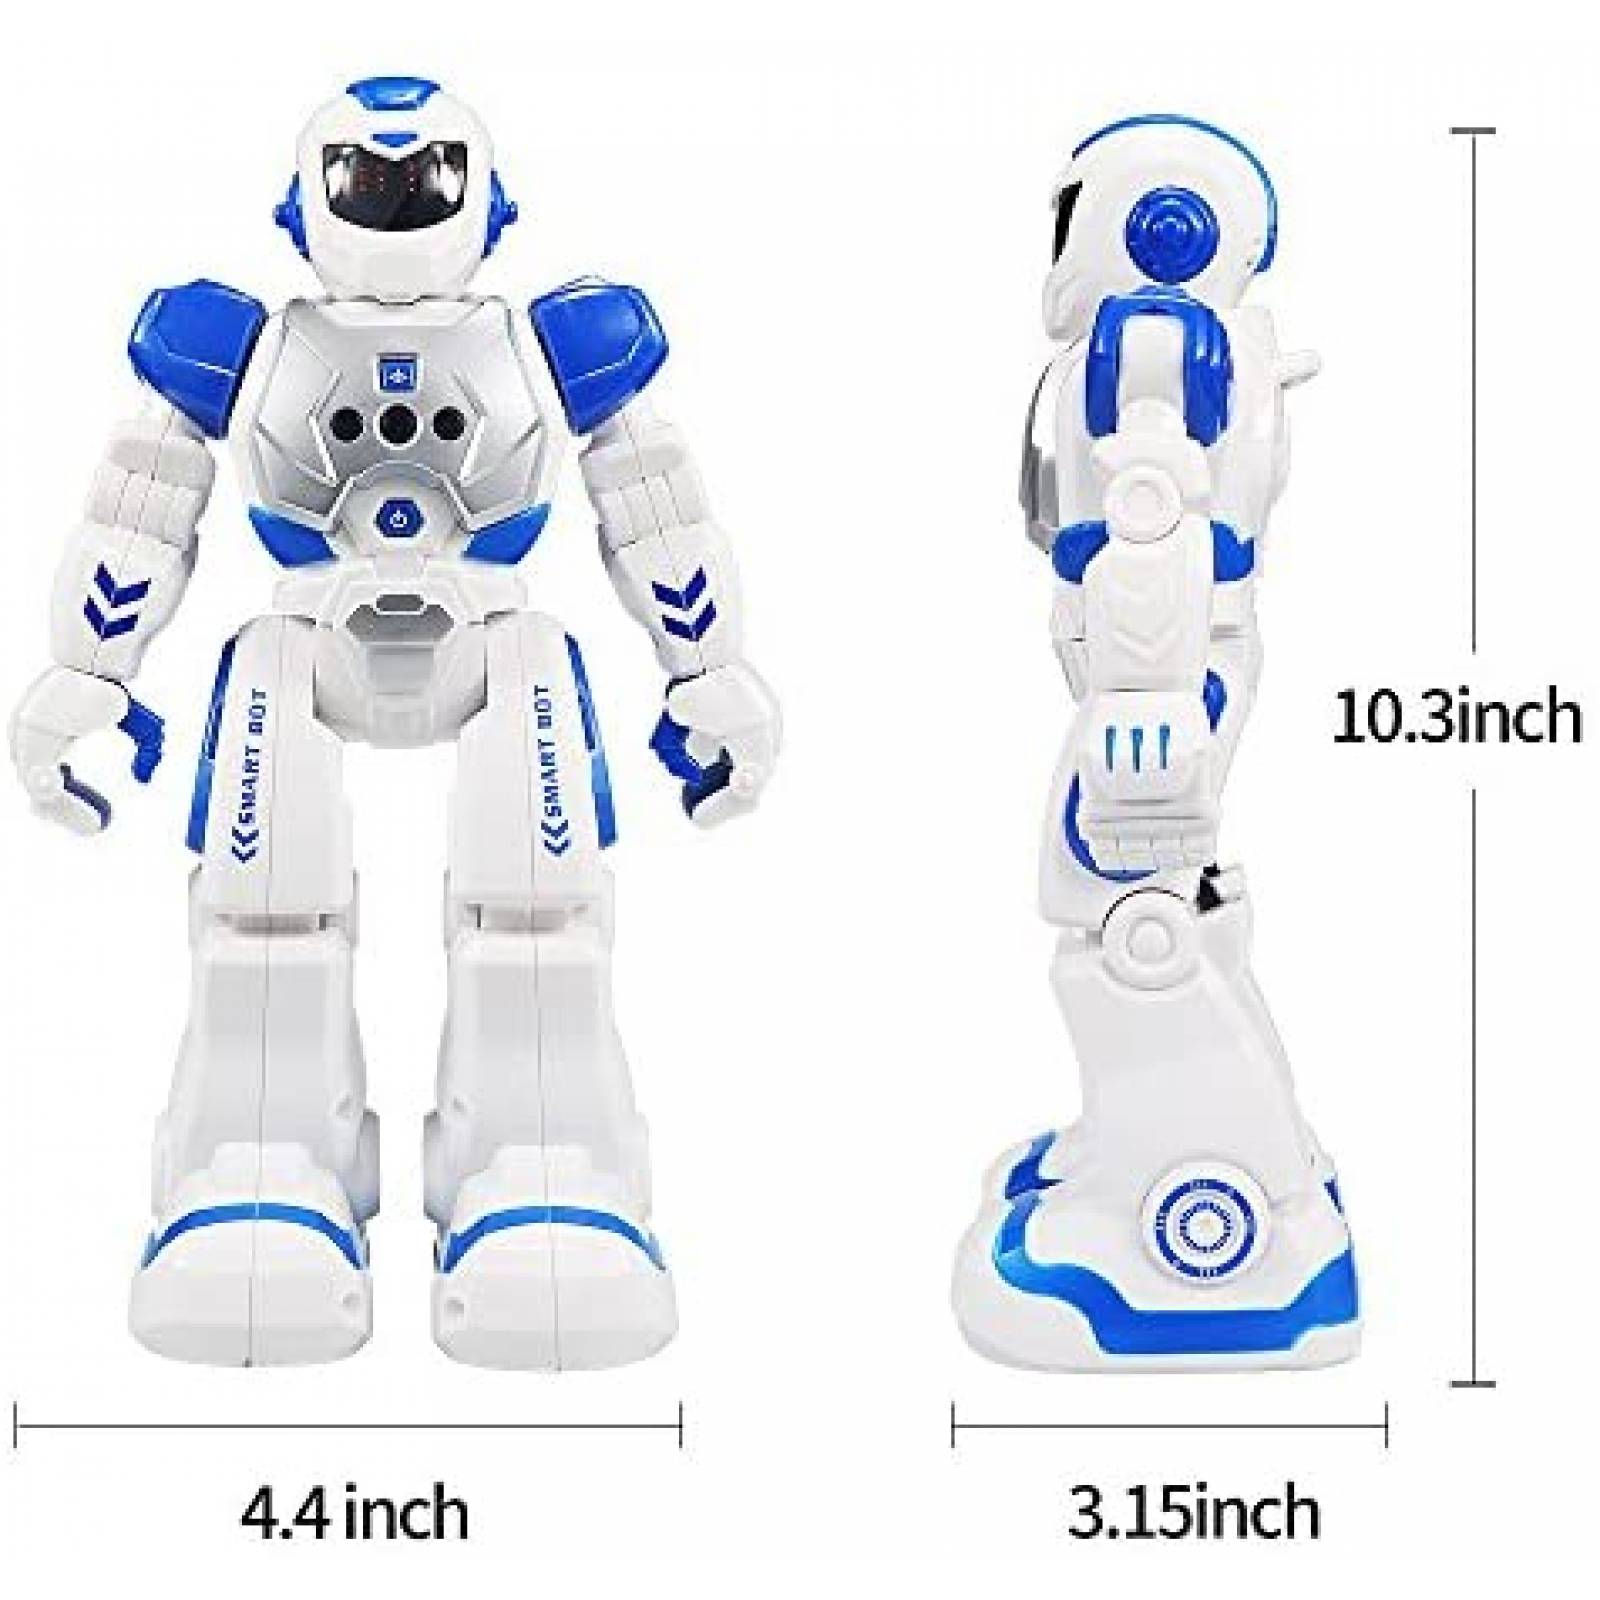 Robot Programable Cargooy Inteligente Entretenimiento -Azul